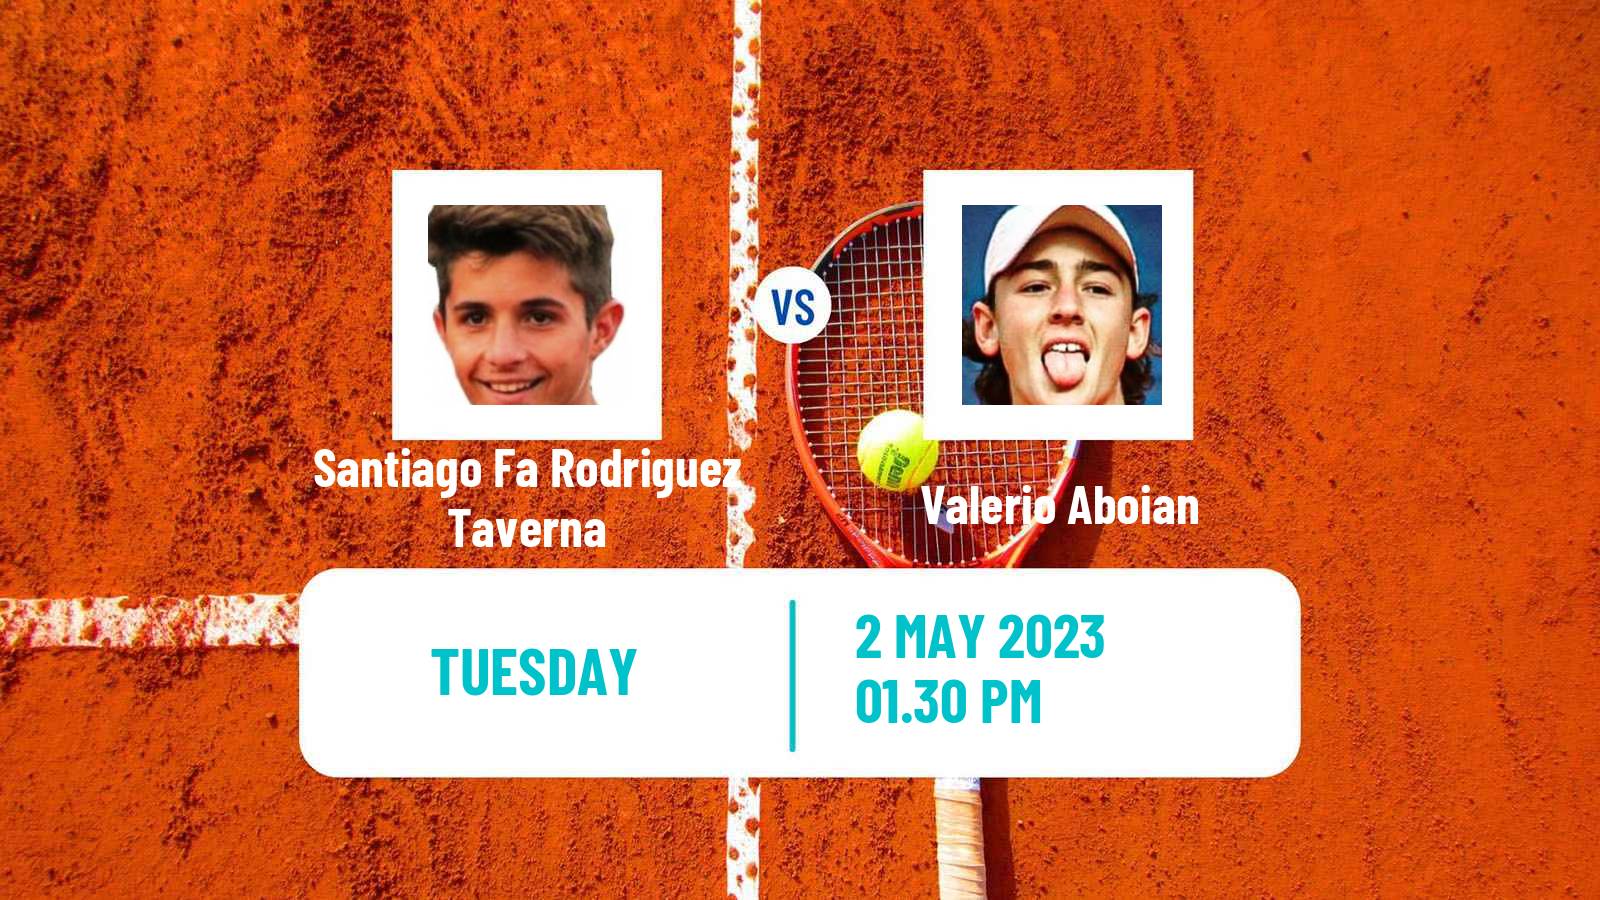 Tennis ATP Challenger Santiago Fa Rodriguez Taverna - Valerio Aboian